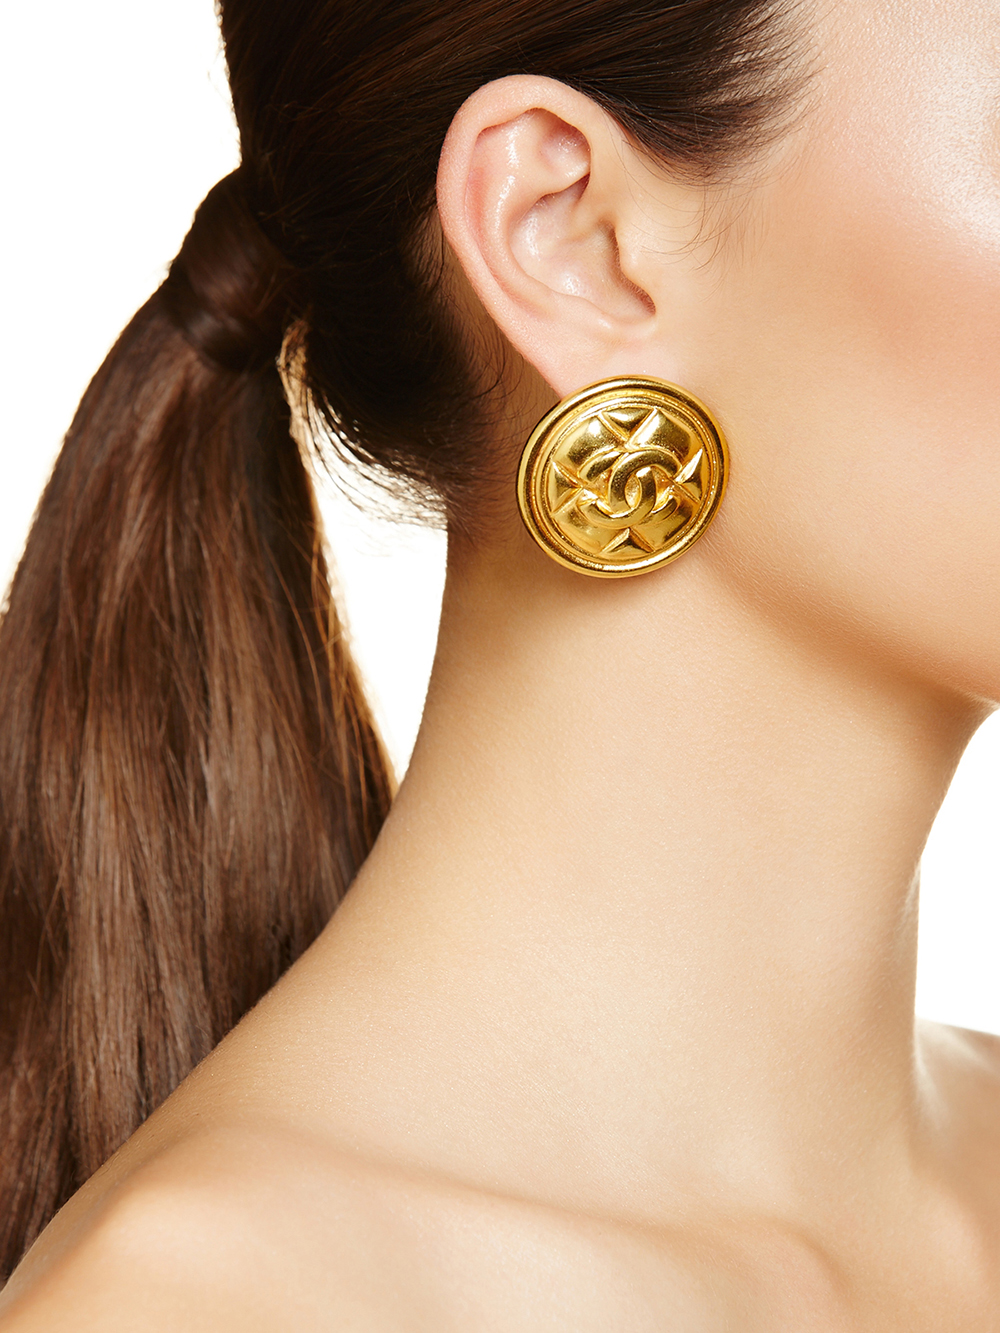 Chanel Classique earrings, $929